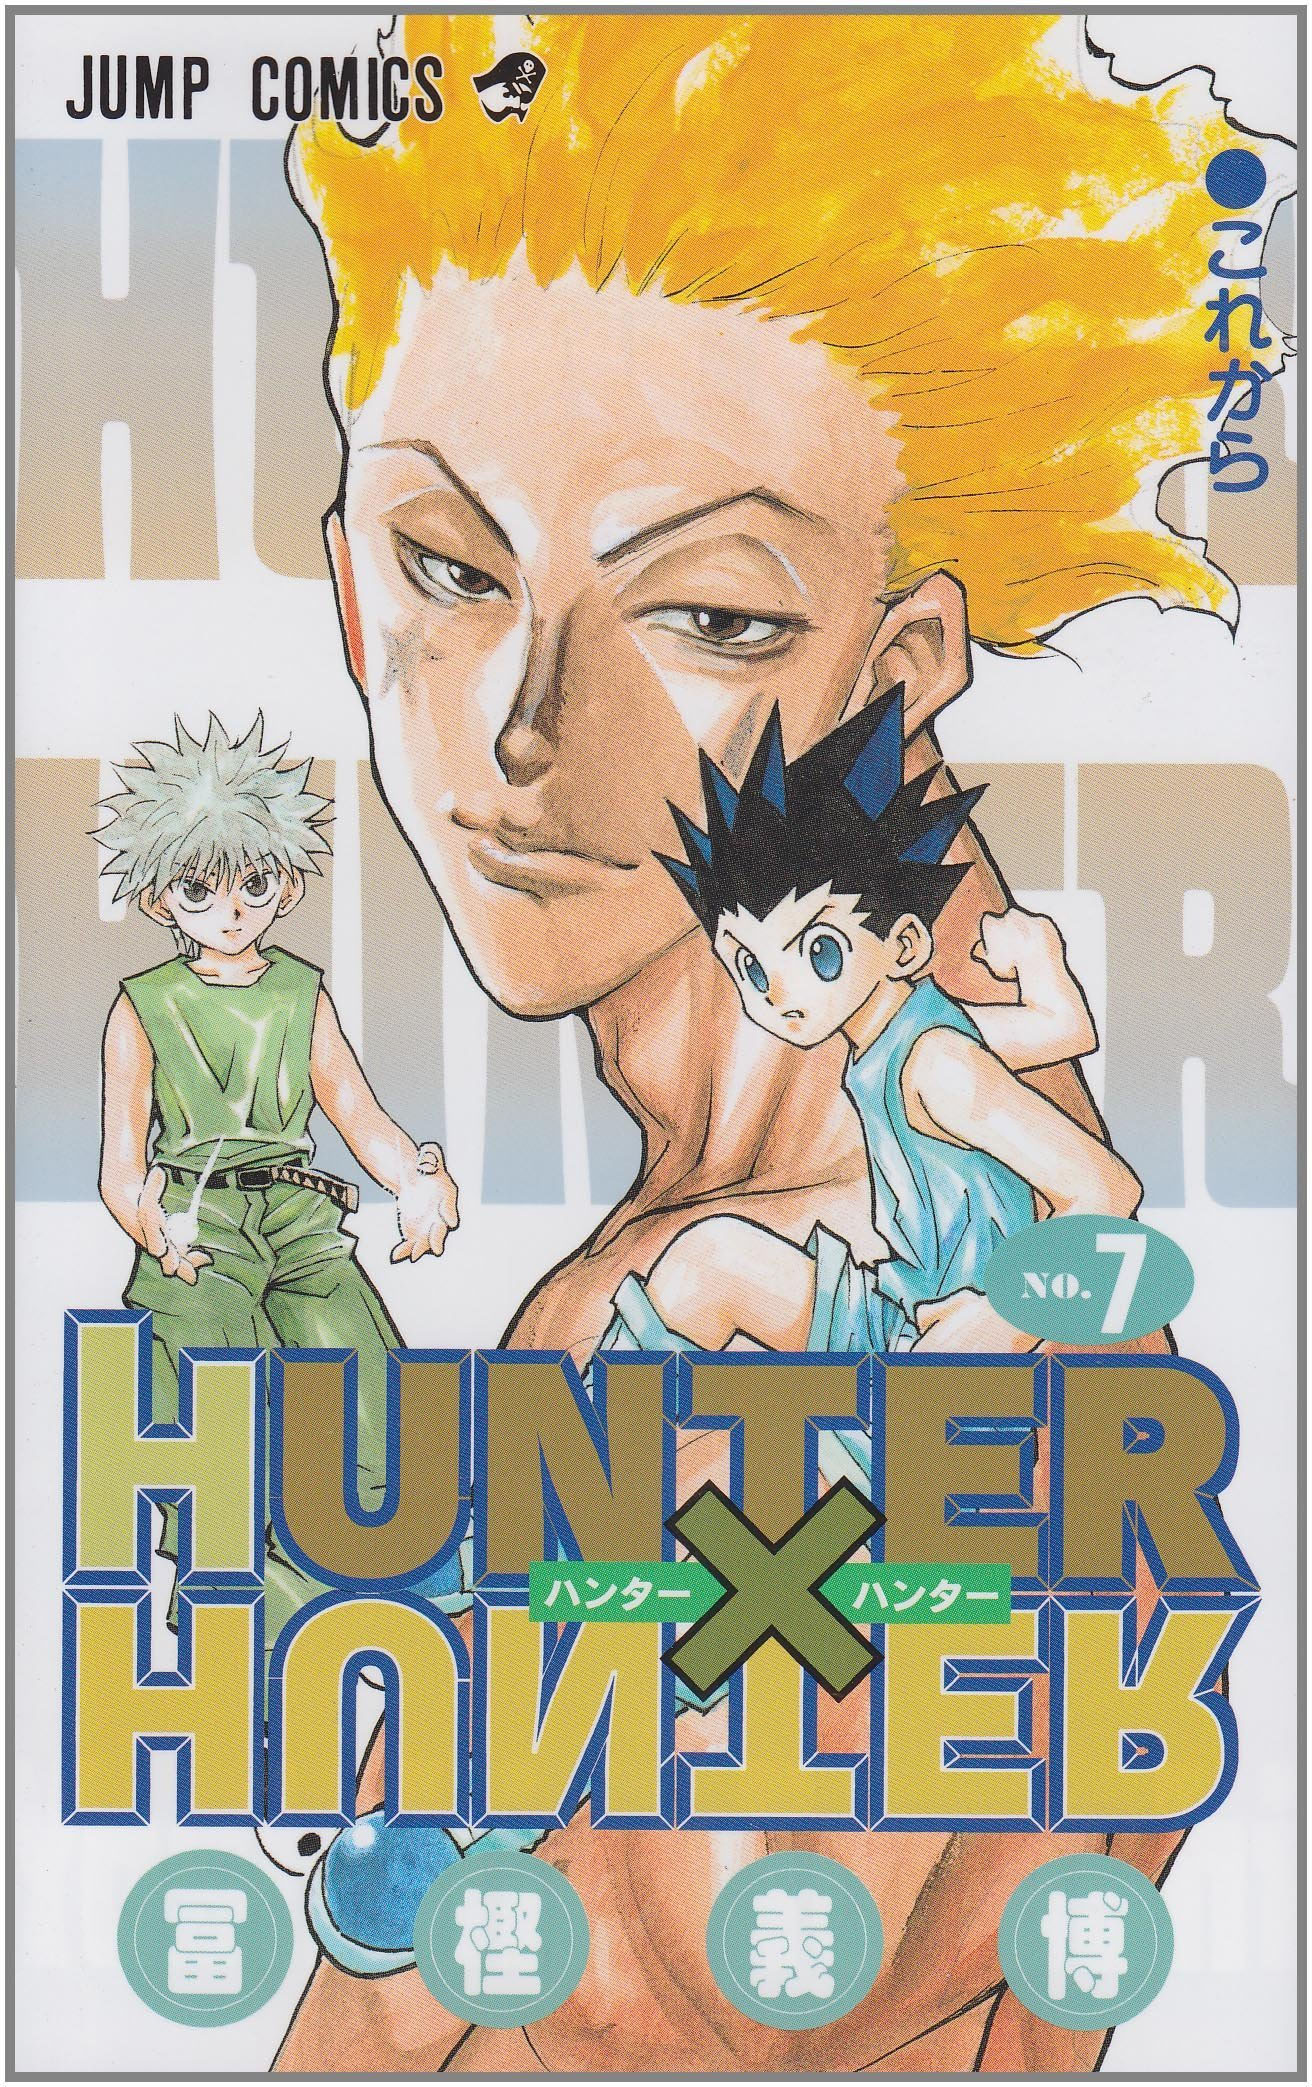 Novo volume de Hunter x Hunter começará a ser lançado em novembro